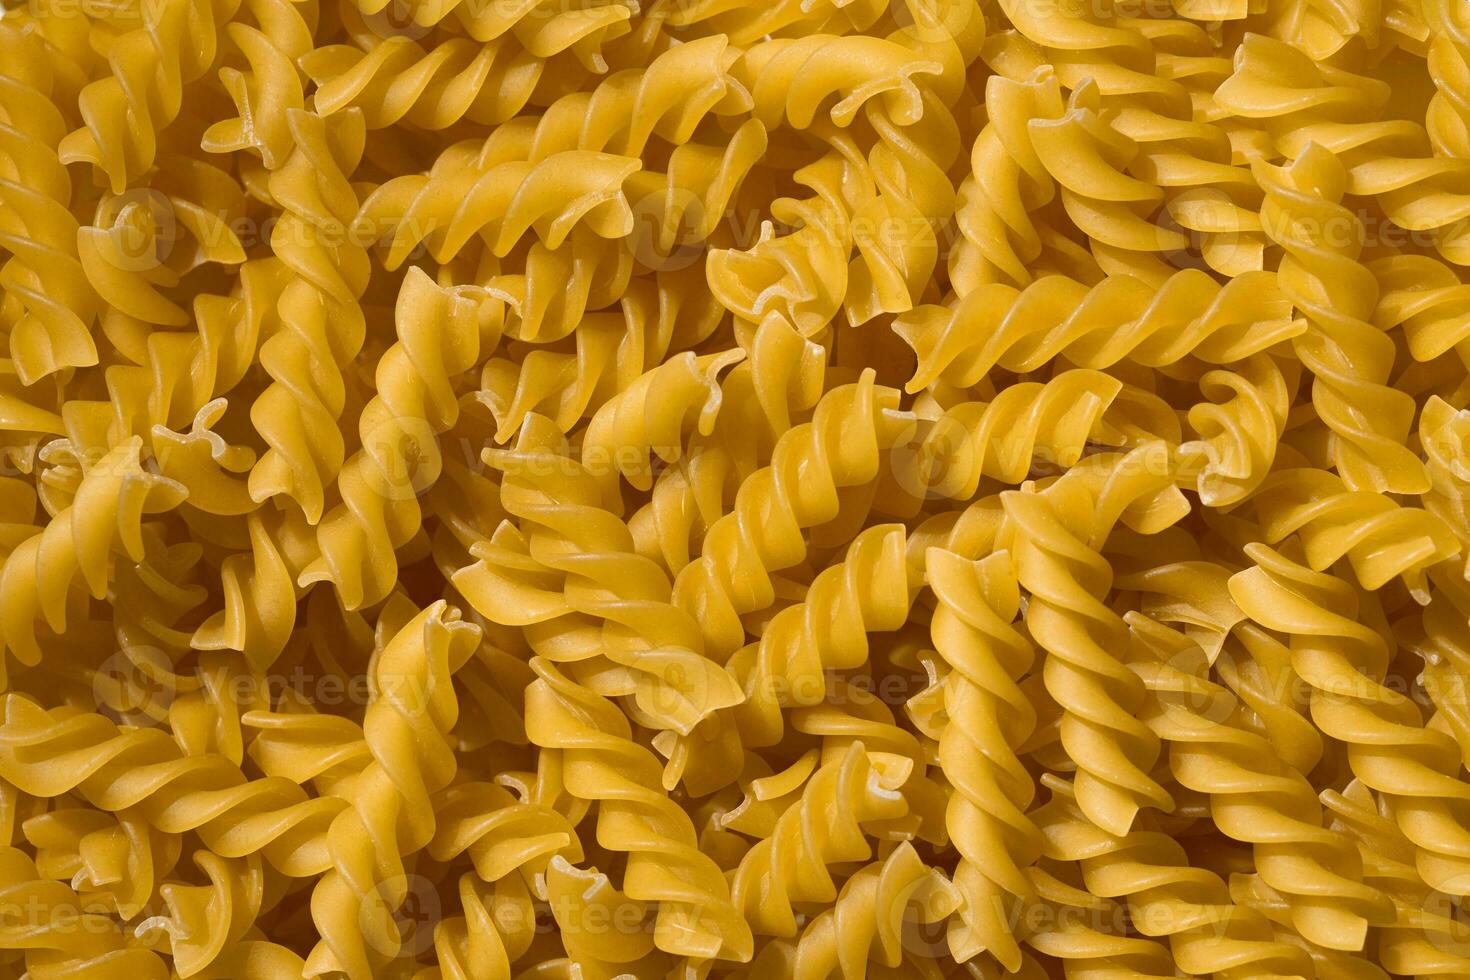 rauw spiraal griesmeel pasta, voedsel achtergrond, macaroni textuur, ongekookt Product, top visie foto